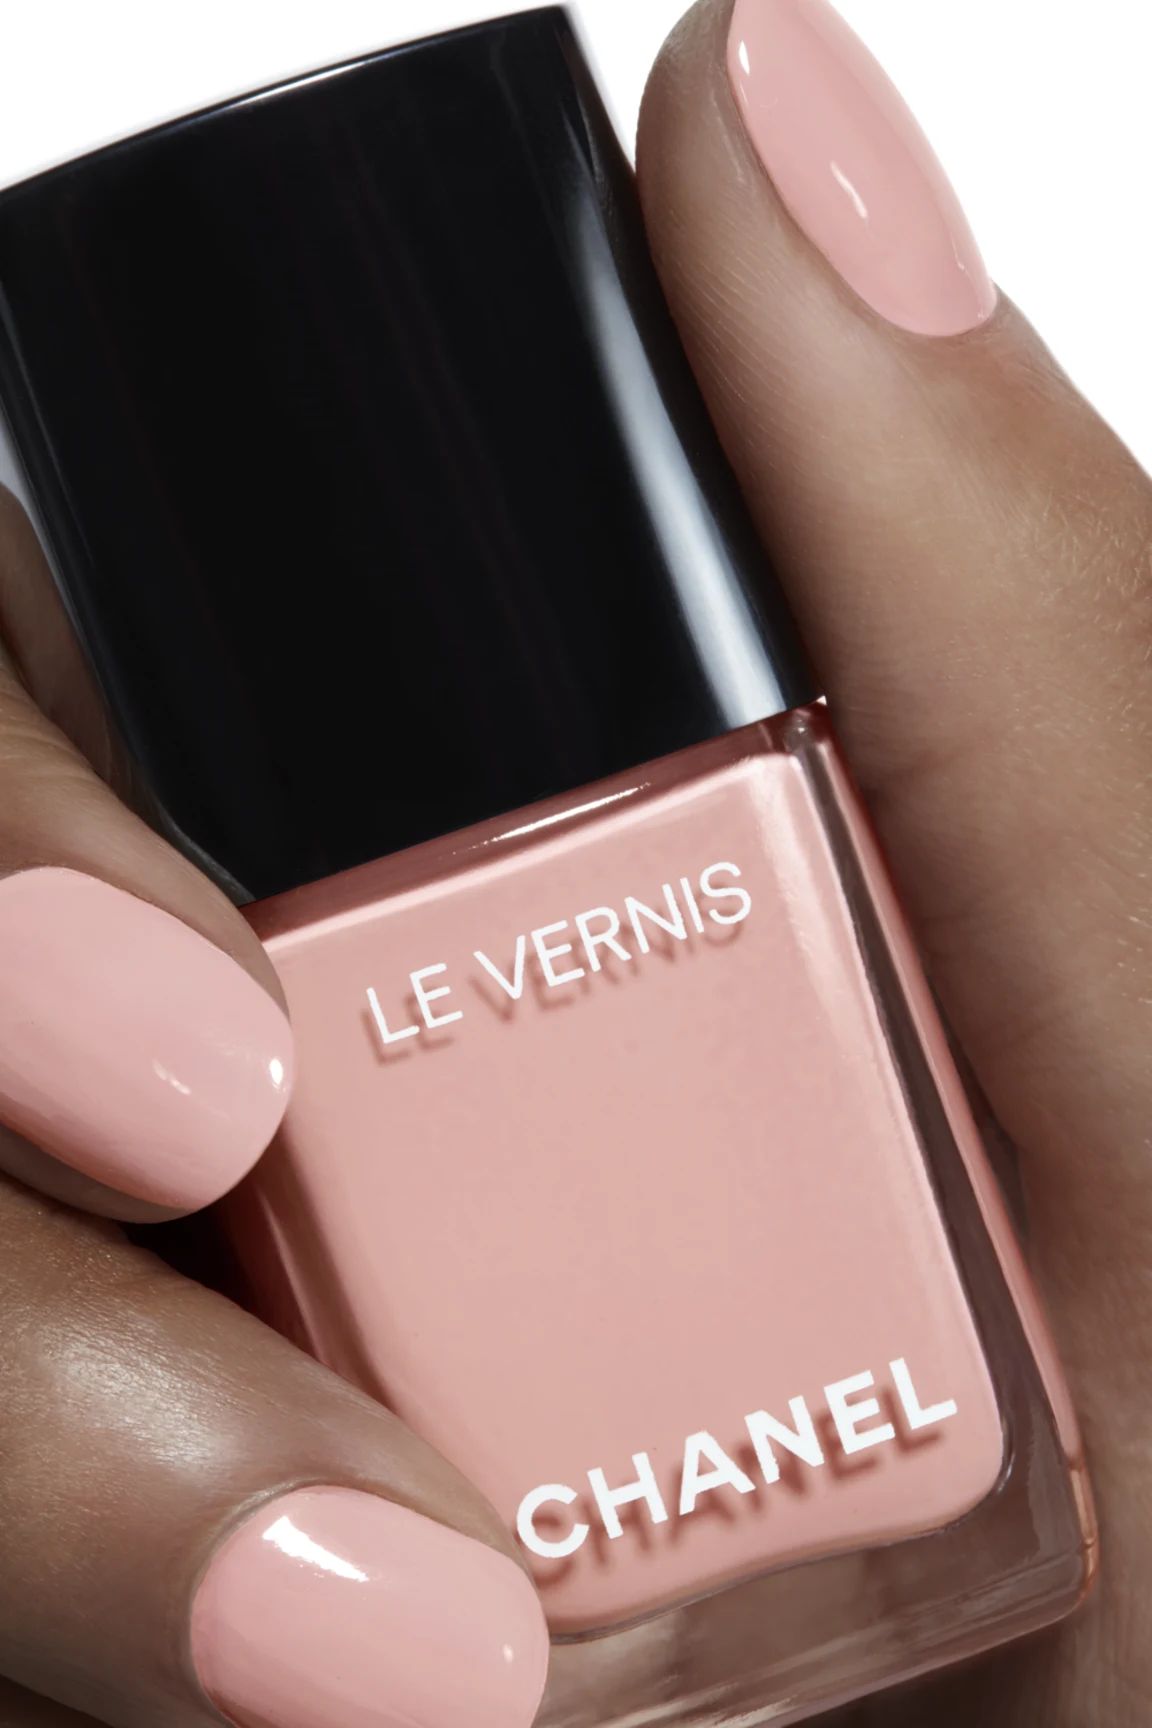 LE VERNIS Longwear nail colour 923 - Onirique | CHANEL | Chanel, Inc. (US)